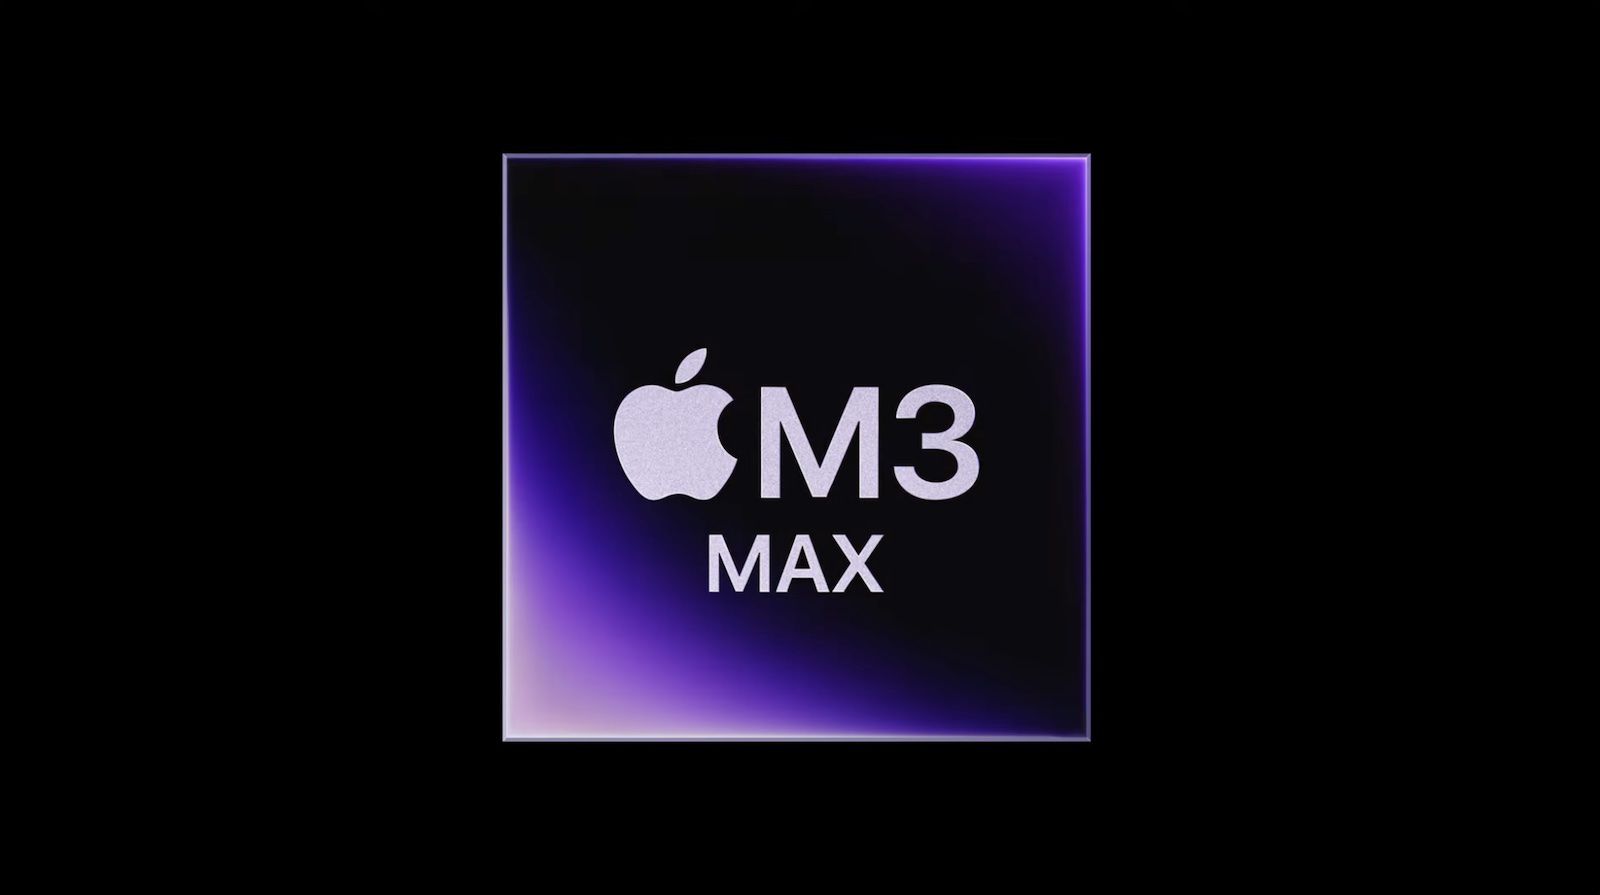 Čip M3 Max je v prvních výsledcích benchmarků téměř stejně rychlý jako čip M2 Ultra